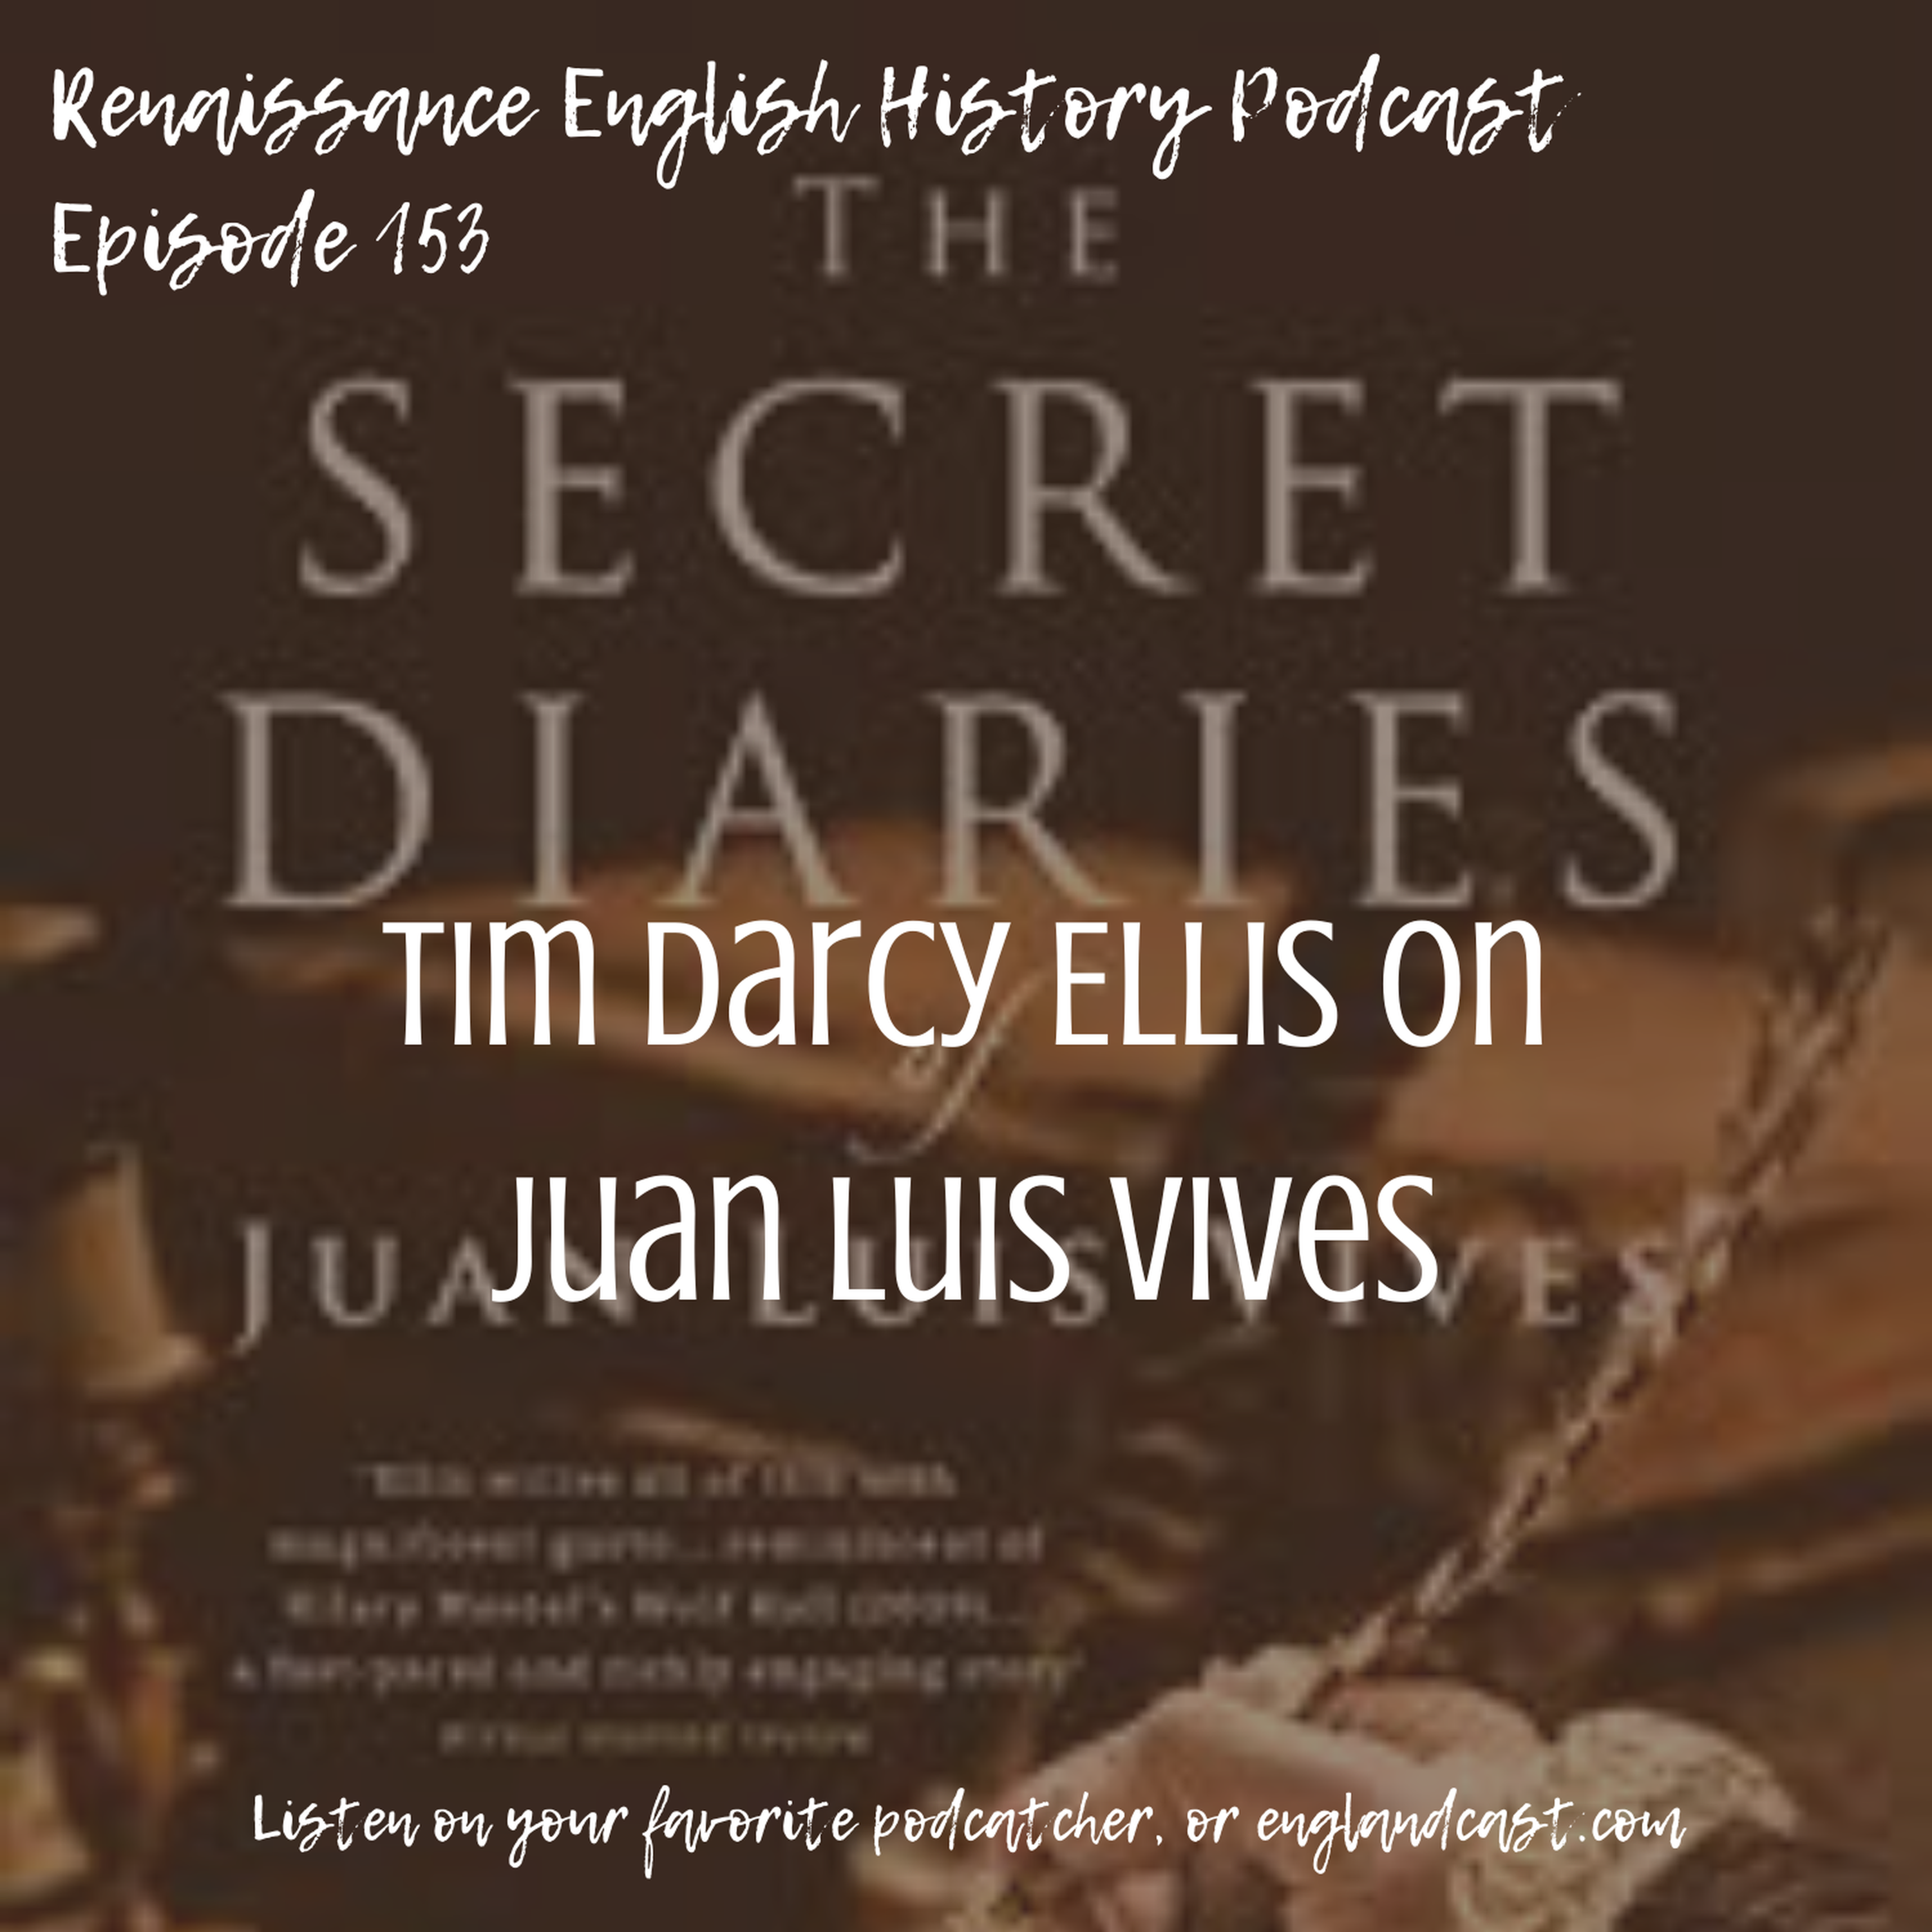 Episode 153: Tim Darcy Ellis on Juan Luis Vives